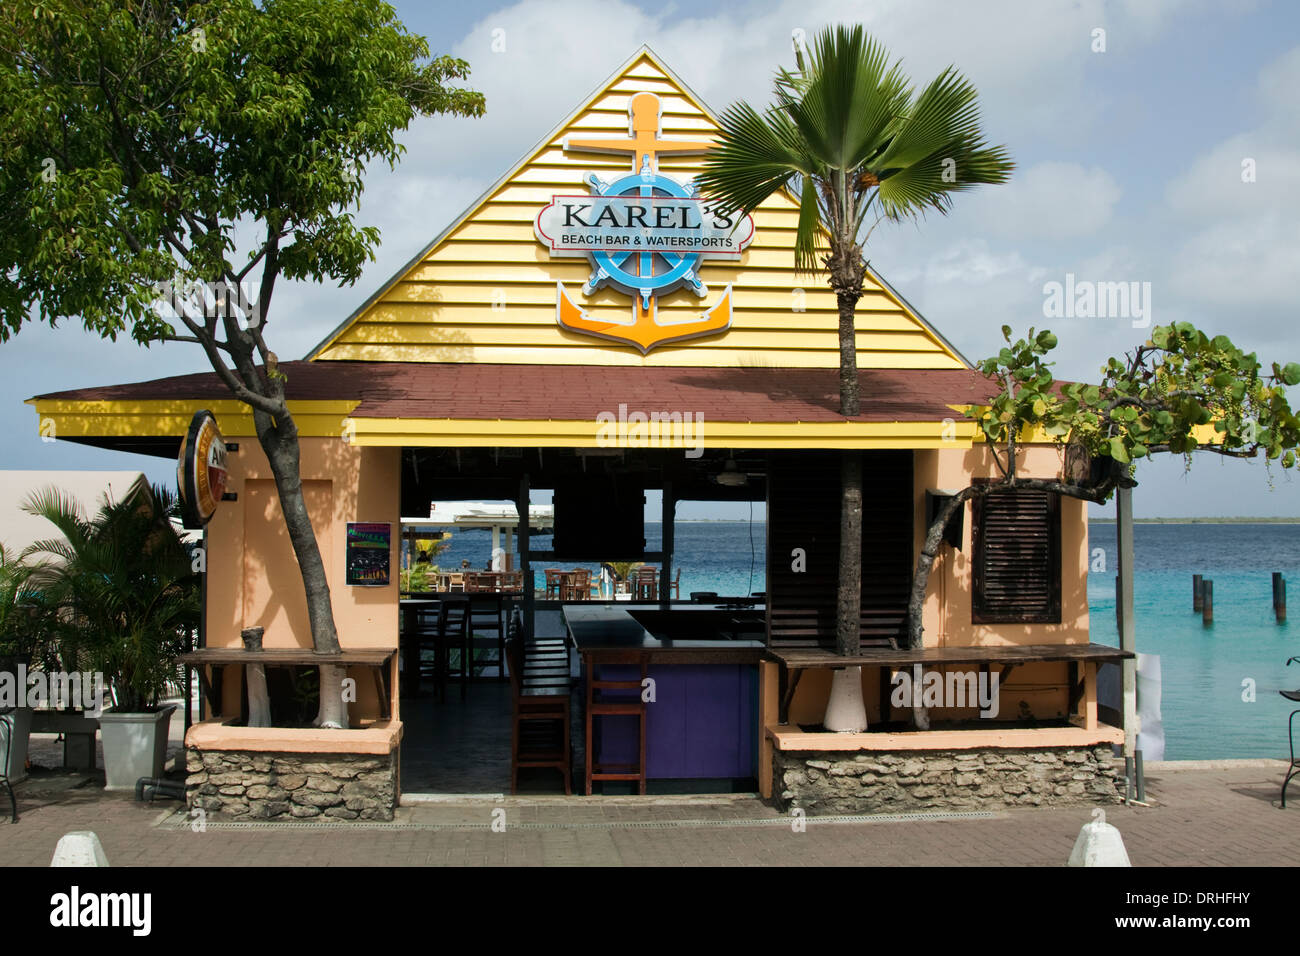 Karel's beach bar - seafront in Kralendijk, Bonaire Stock Photo